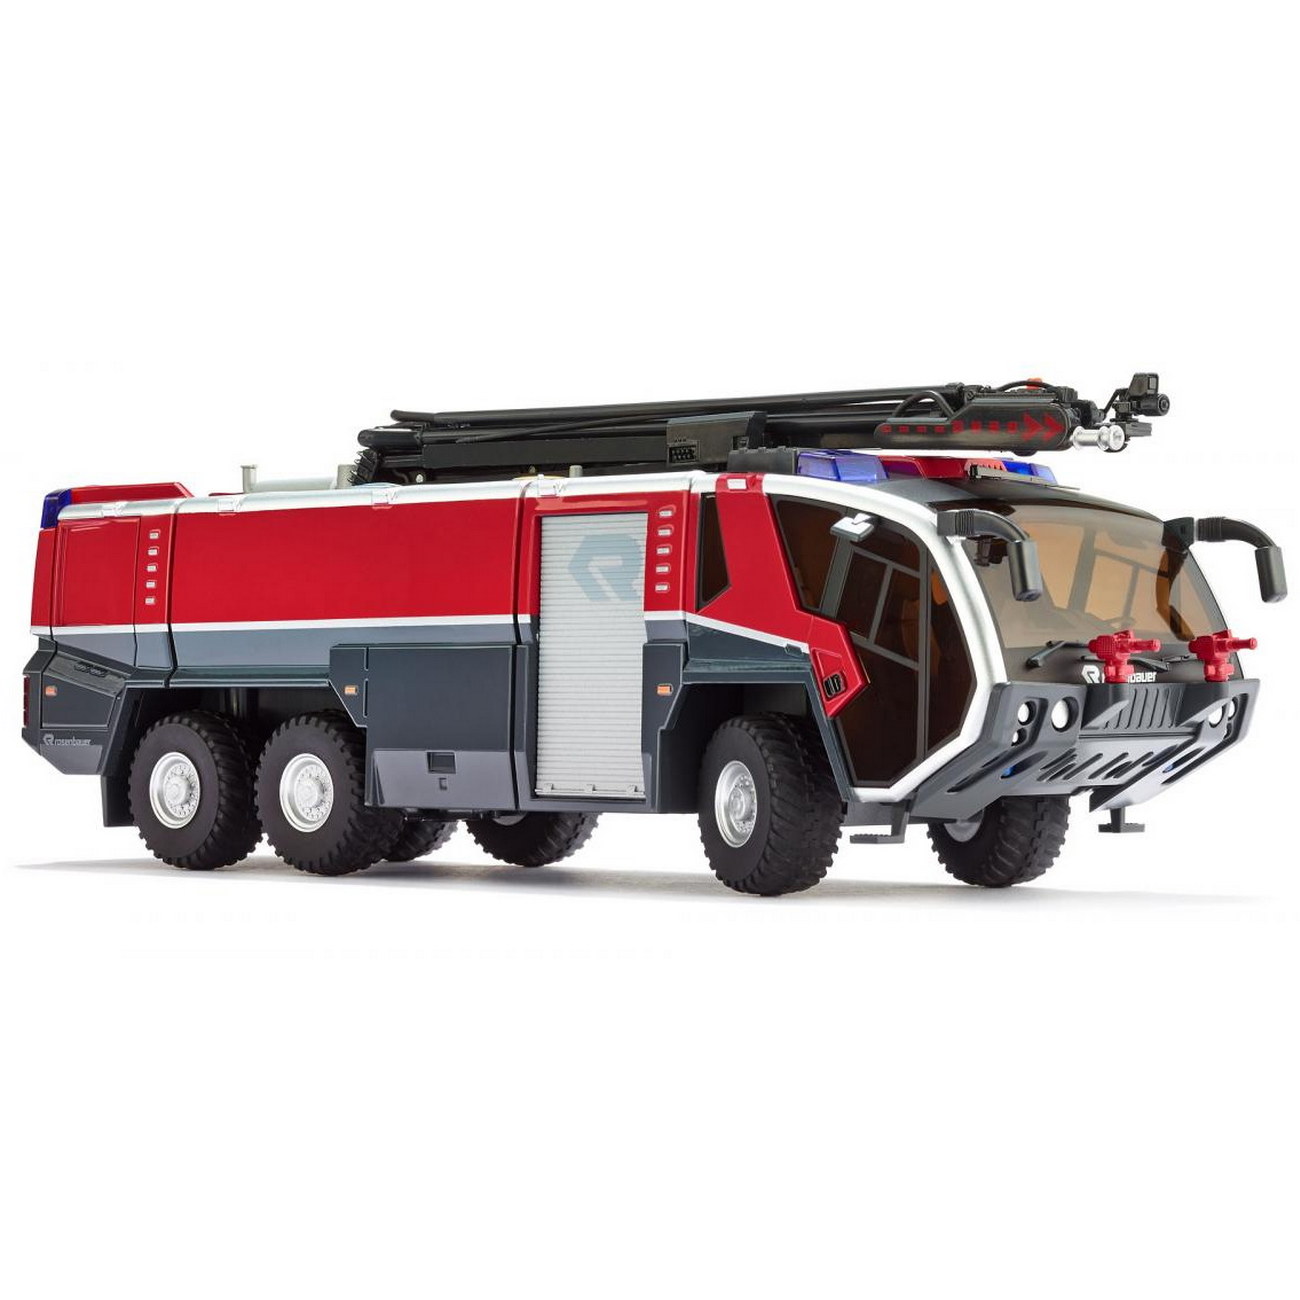 WIKING 043003 - Feuerwehr Rosenbauer FLF Panther 6x6 + Löscharm